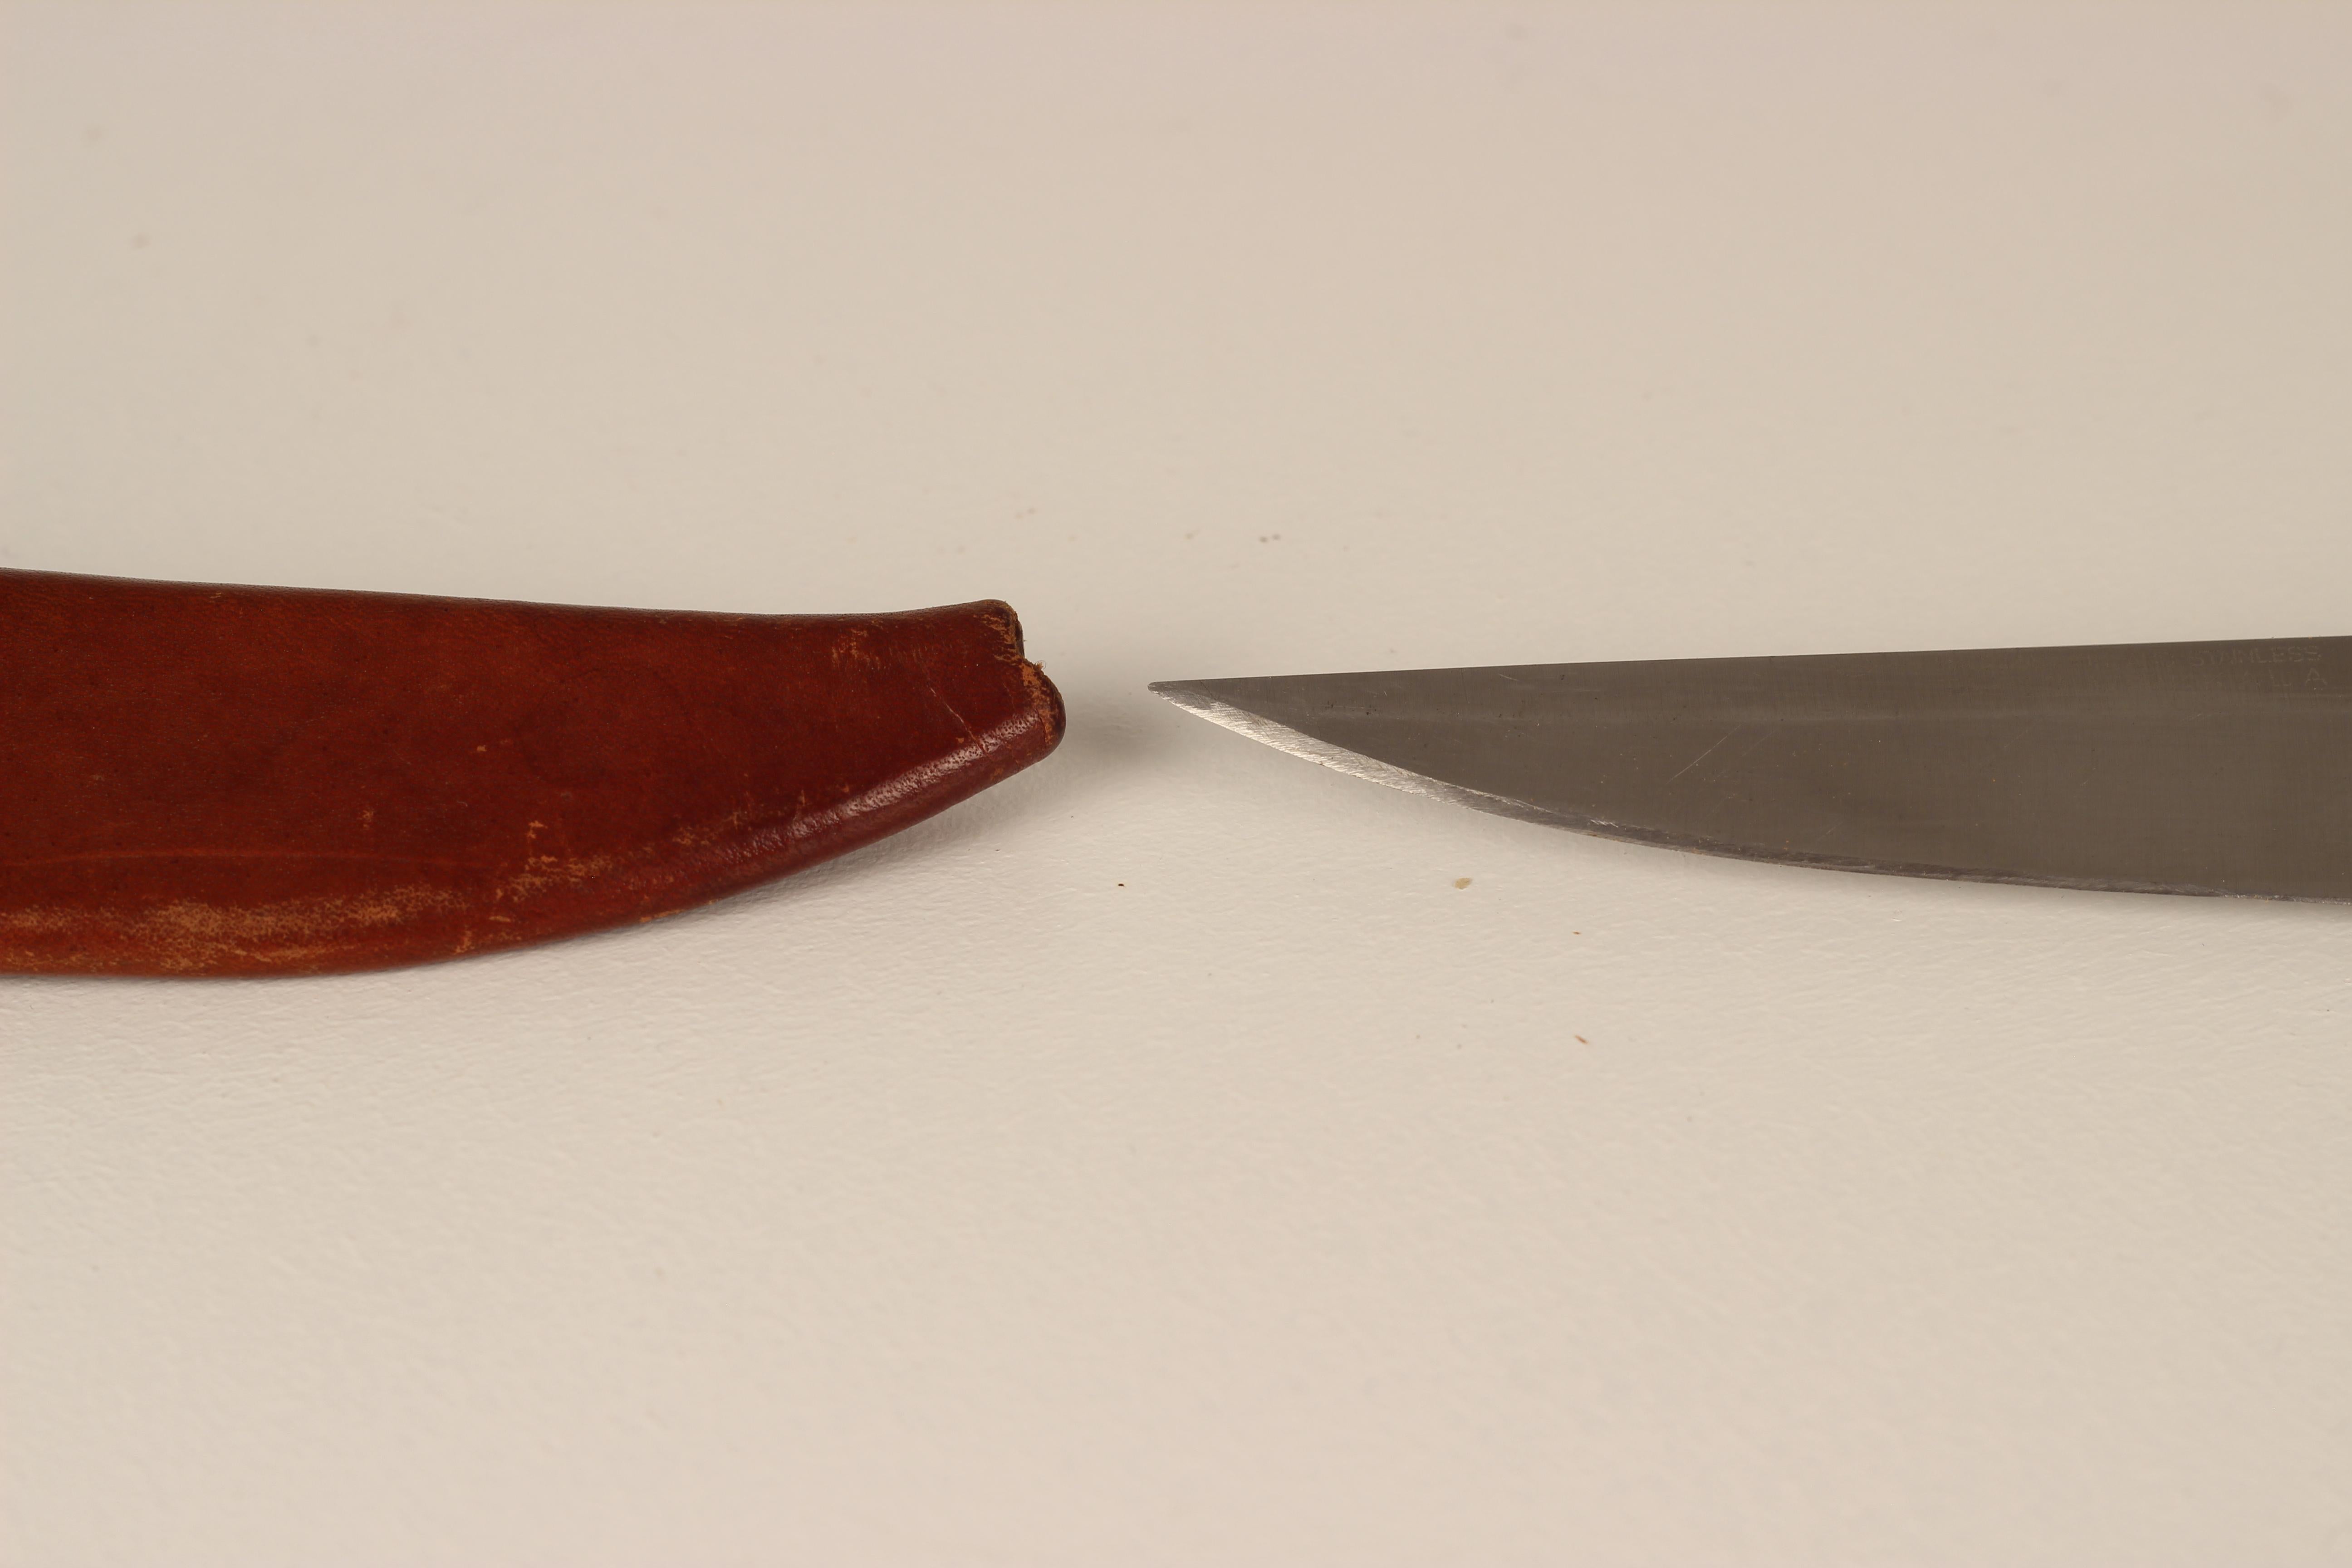 Nylon Hackman Finland Tapio Wirkkala Stainless Steel Puukko Knife in Leather Sheath